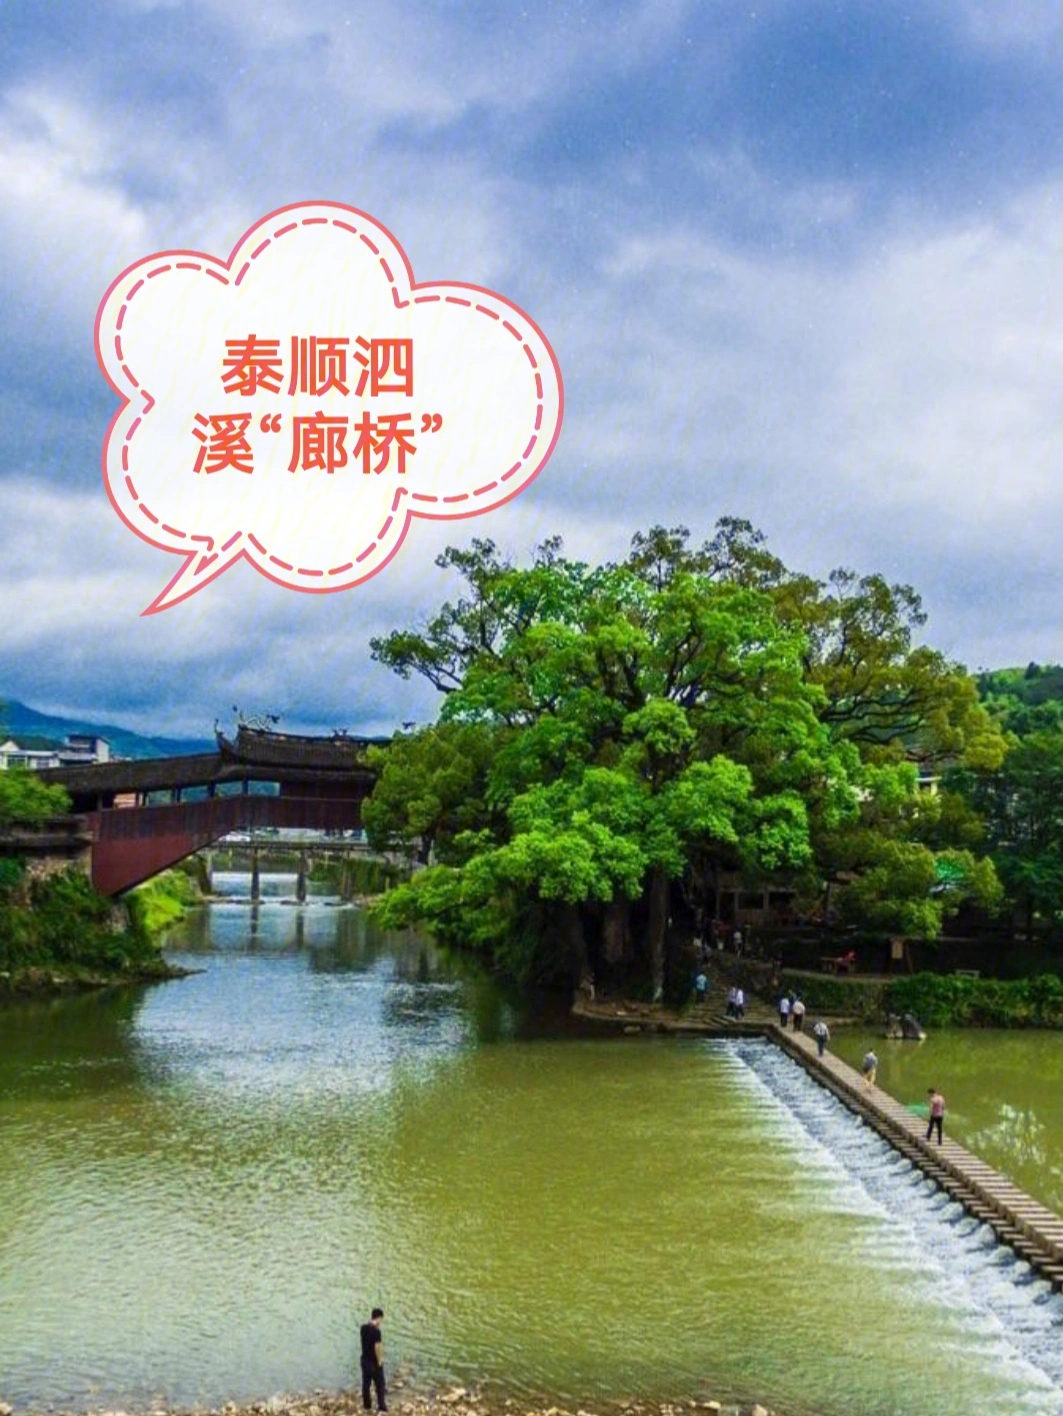 《泰顺泗溪廊桥》,泰顺廊桥文化园位于泗溪镇,国家4a级旅游景区,浙江